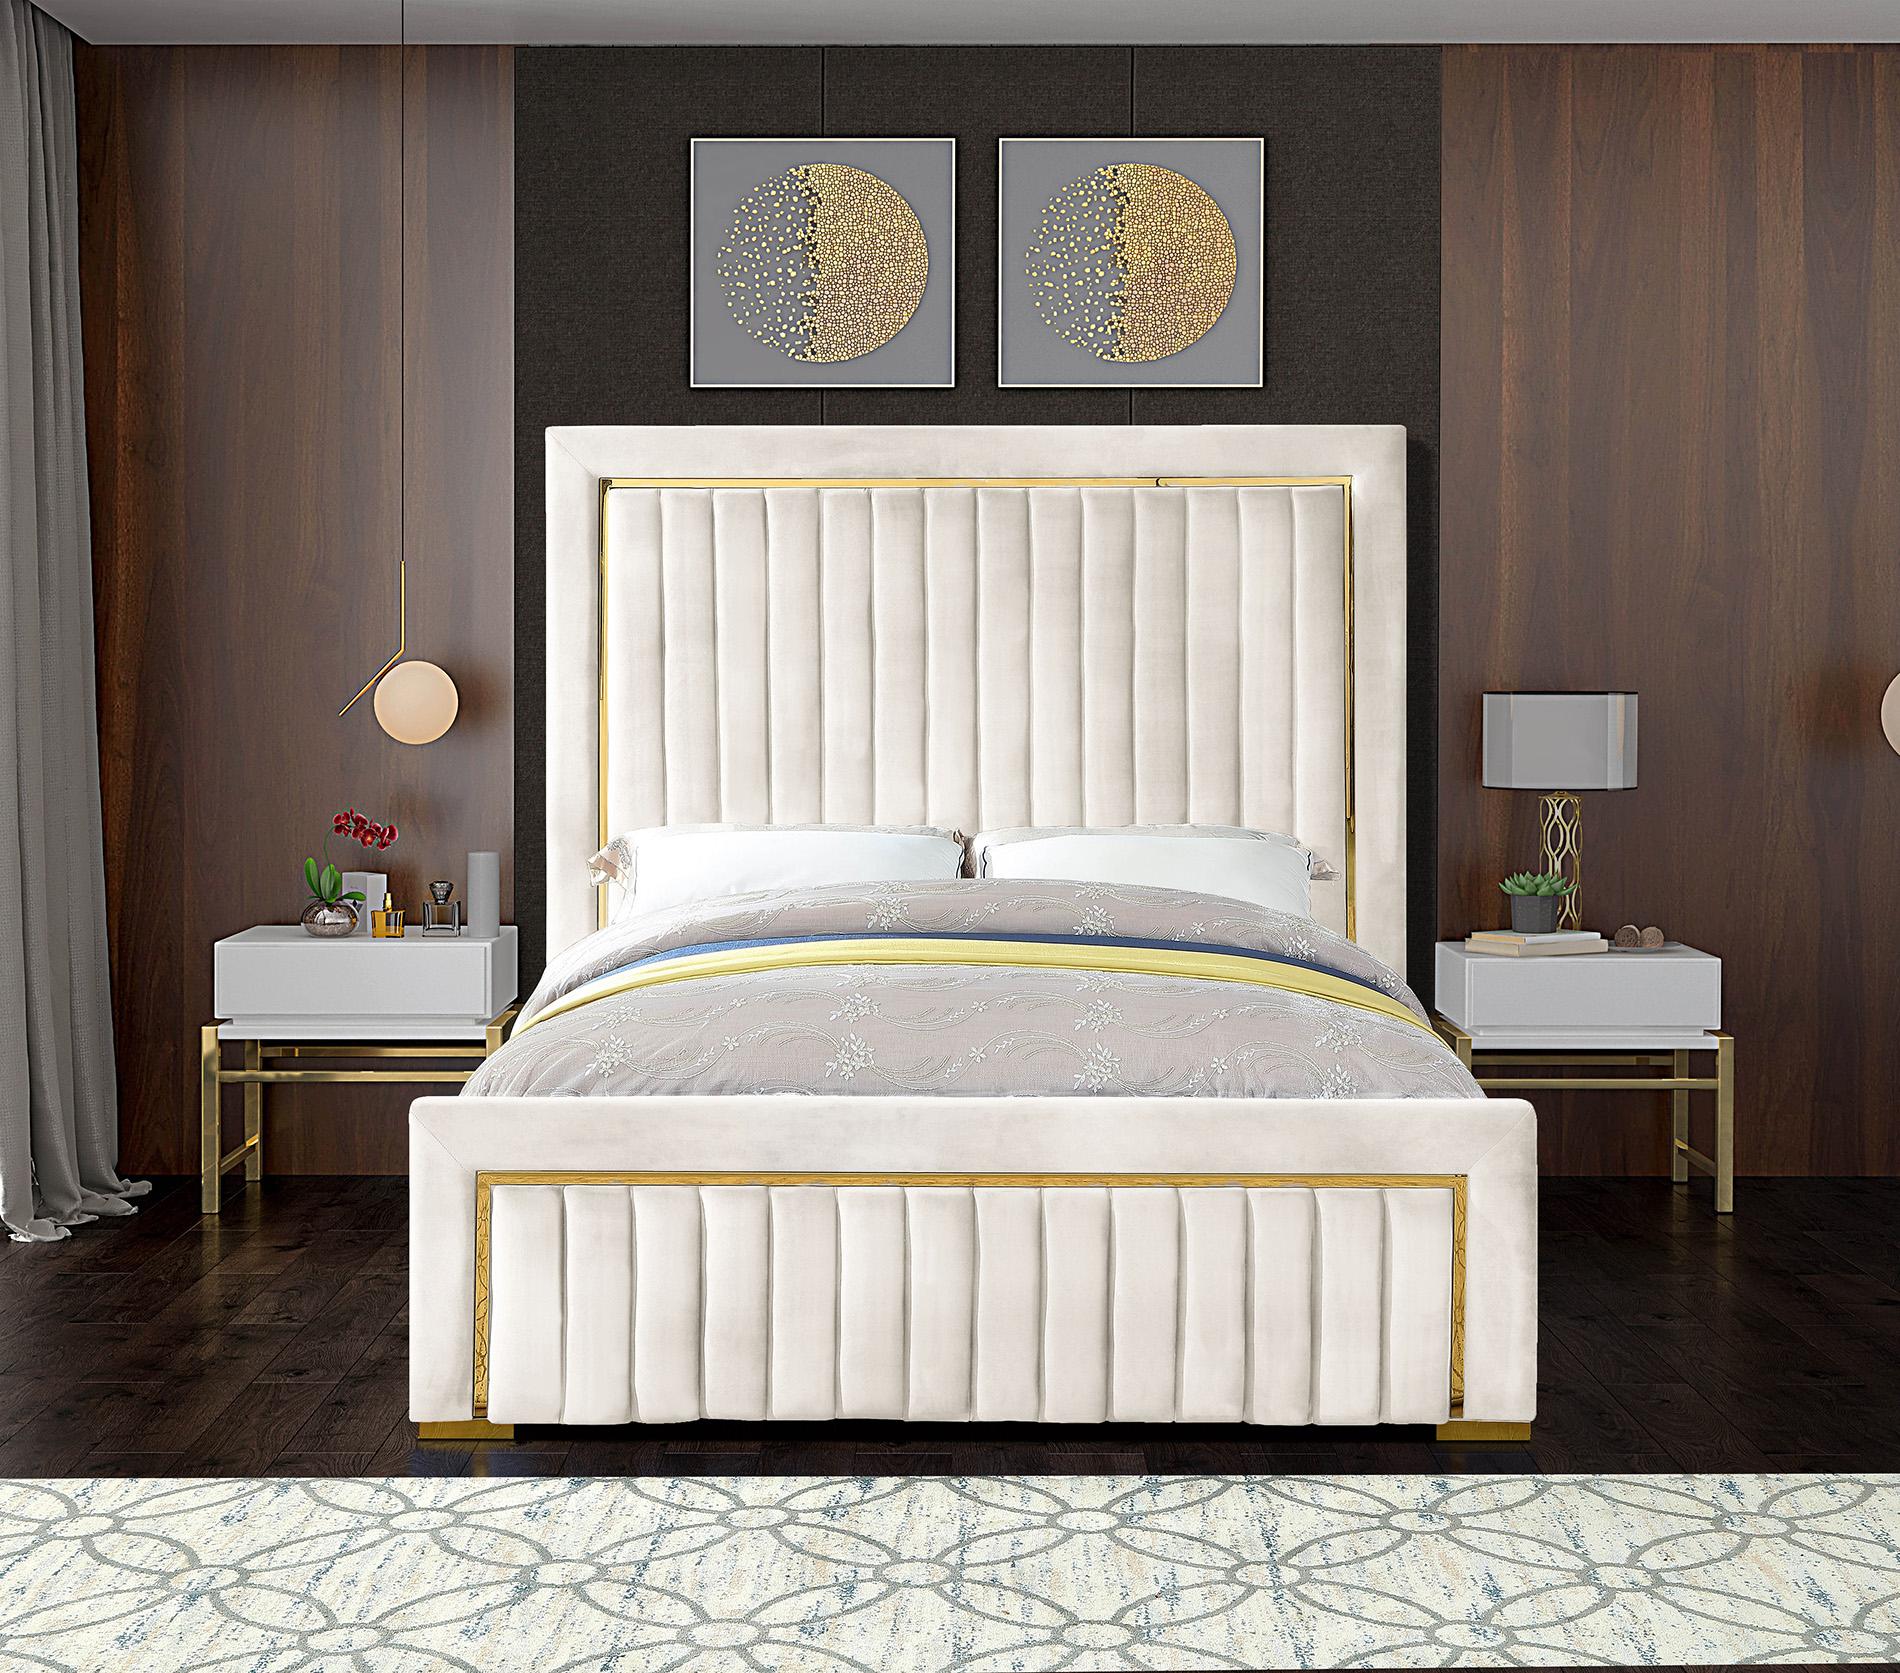 

    
Meridian Furniture DOLCE Cream-Q Platform Bed Cream DolceCream-Q
